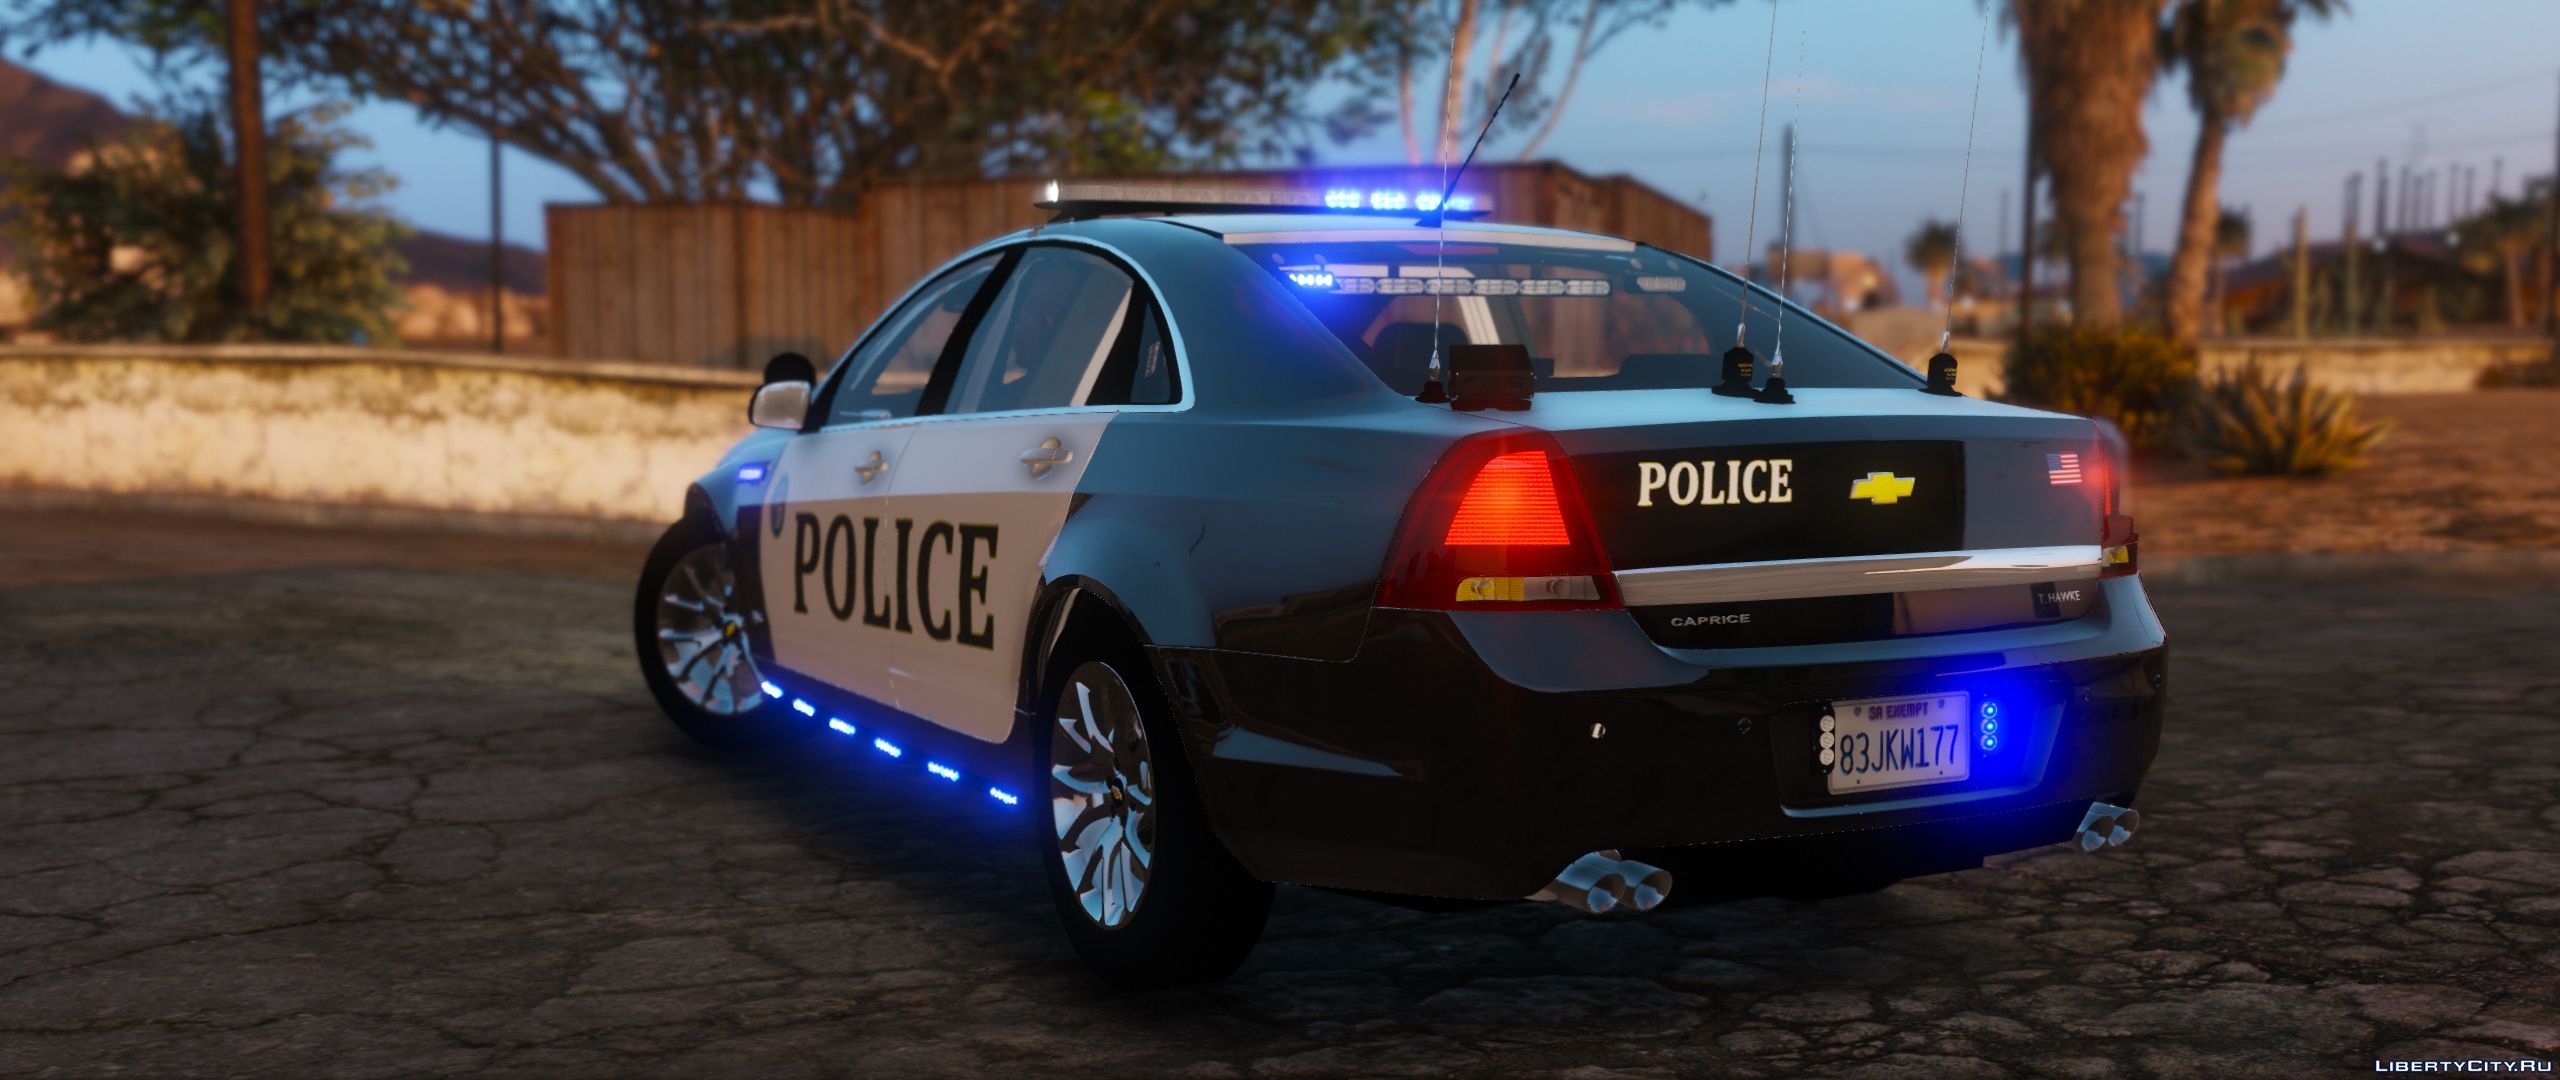 Пак полицейских машин. Шевроле каприз полиция. Forza 5 Police car Gameplay. Замена police3. Chevrolet Caprice обои.